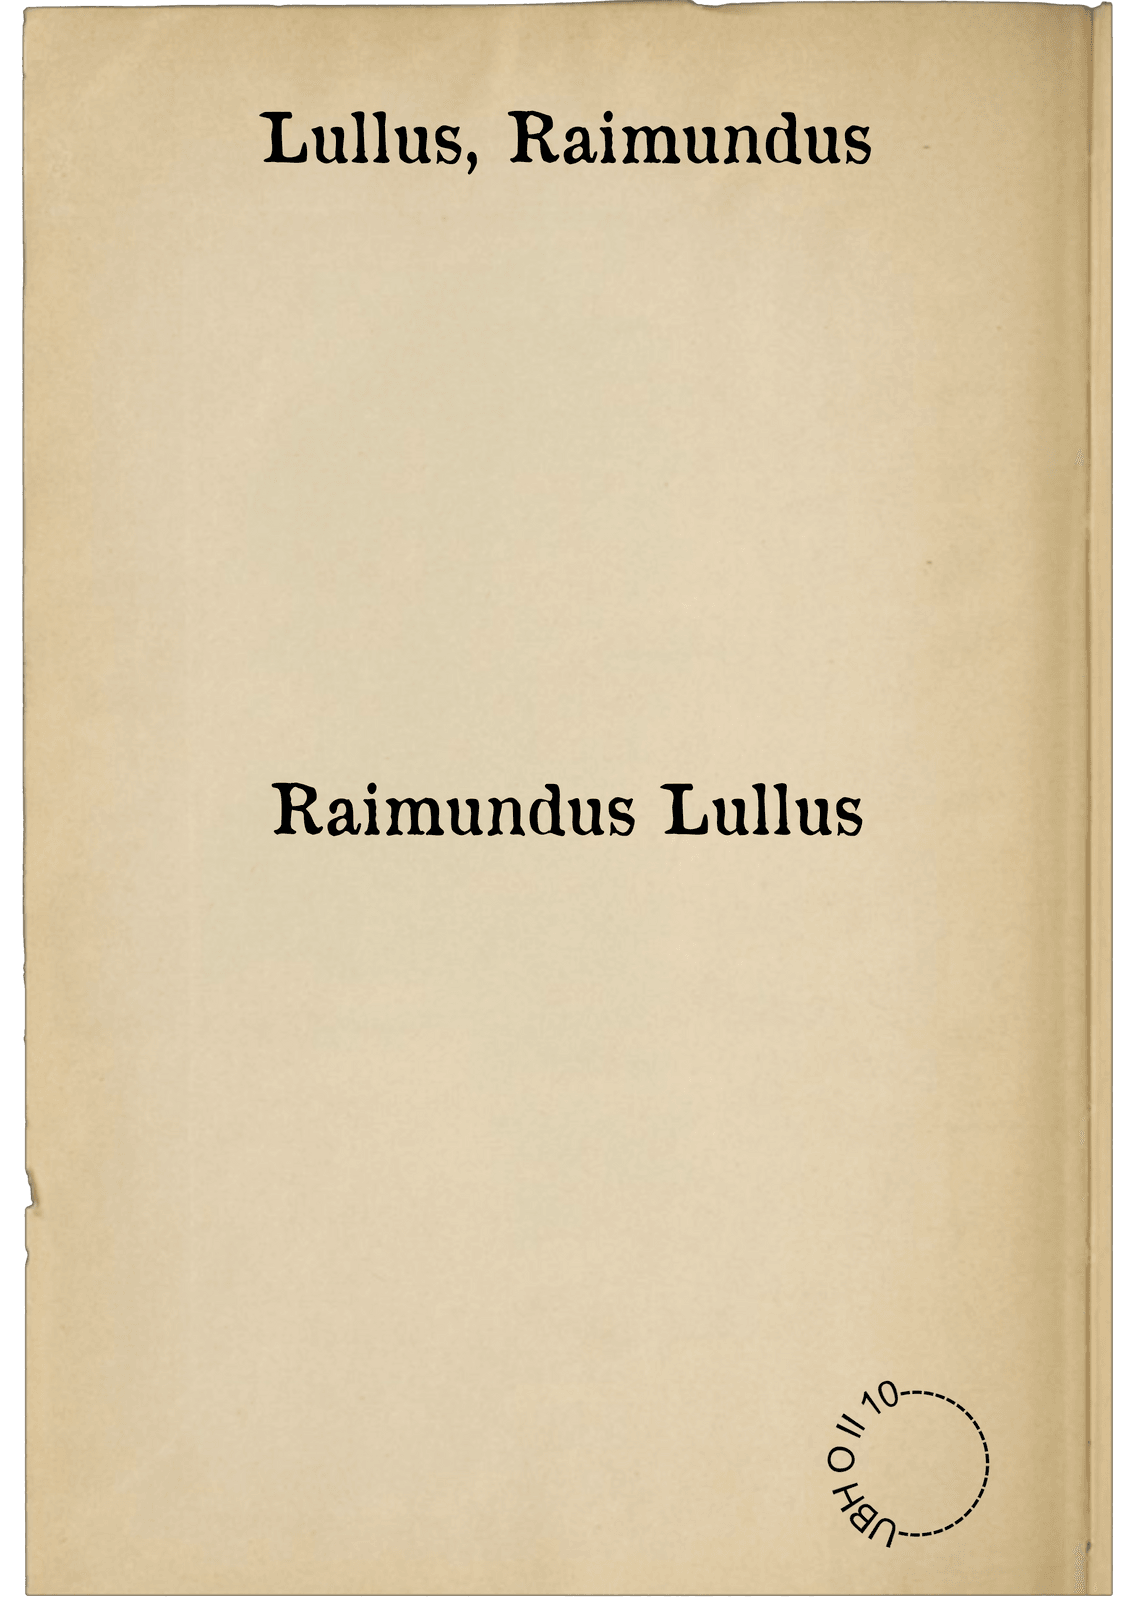 Raimundus Lullus